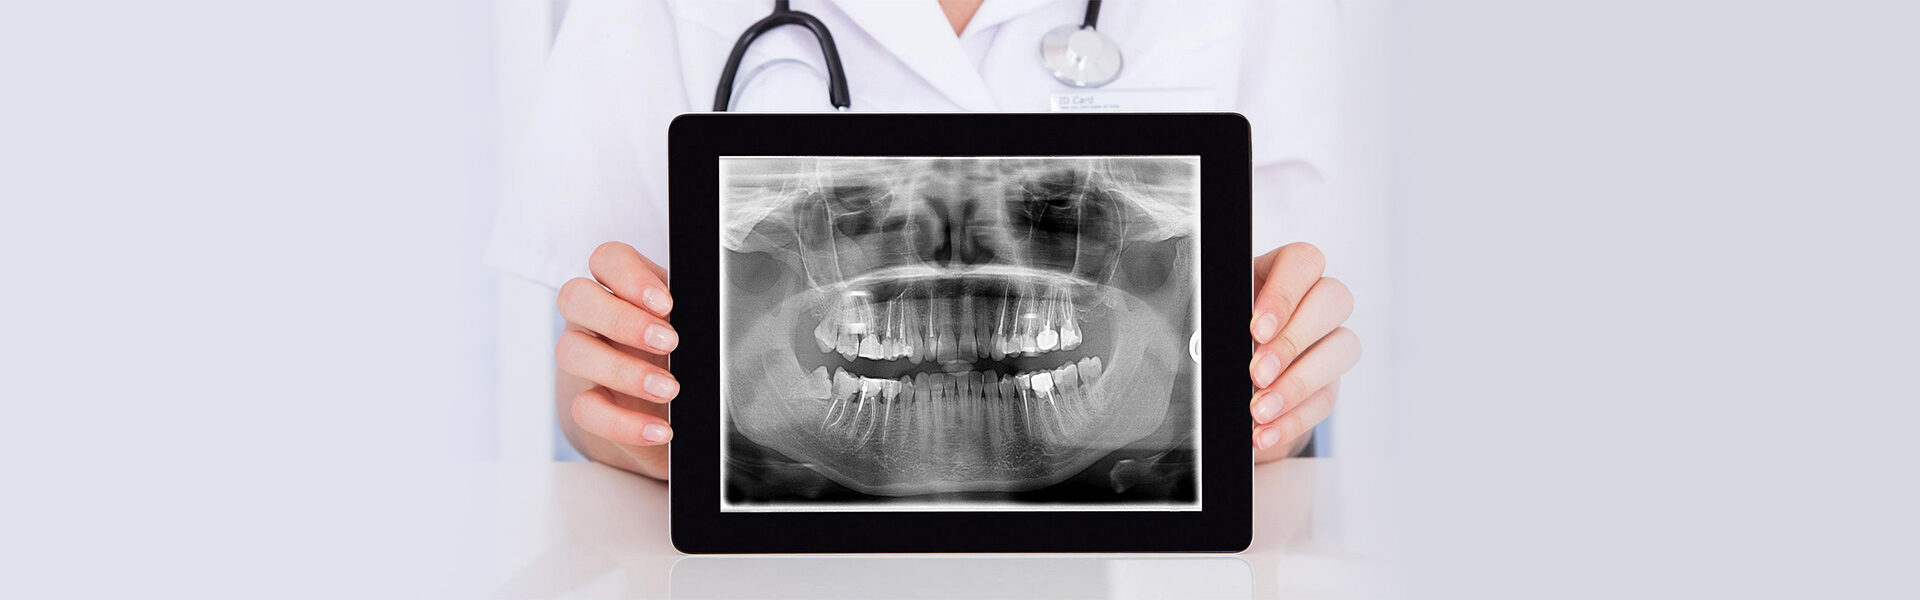 Digital Dental X-Rays in Sharon, MA